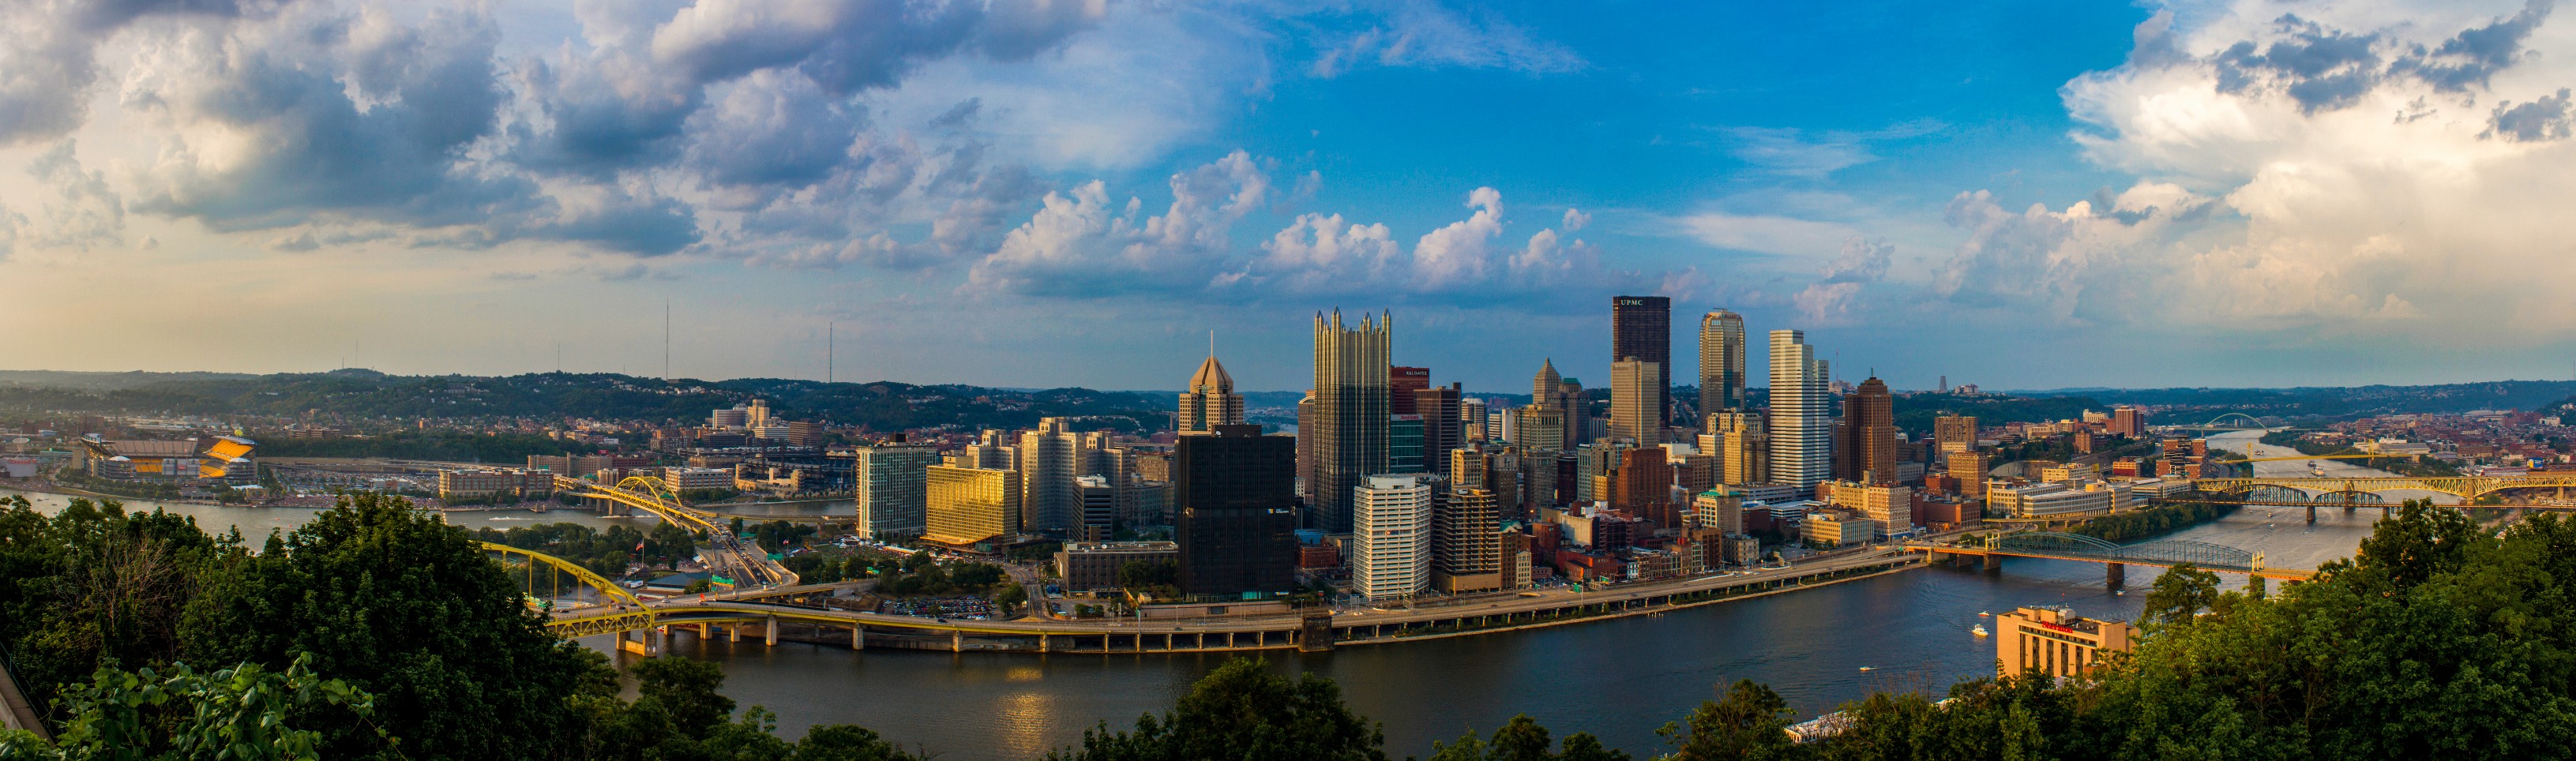 Pittsburgh Skyline by Photographer Matt Sunday